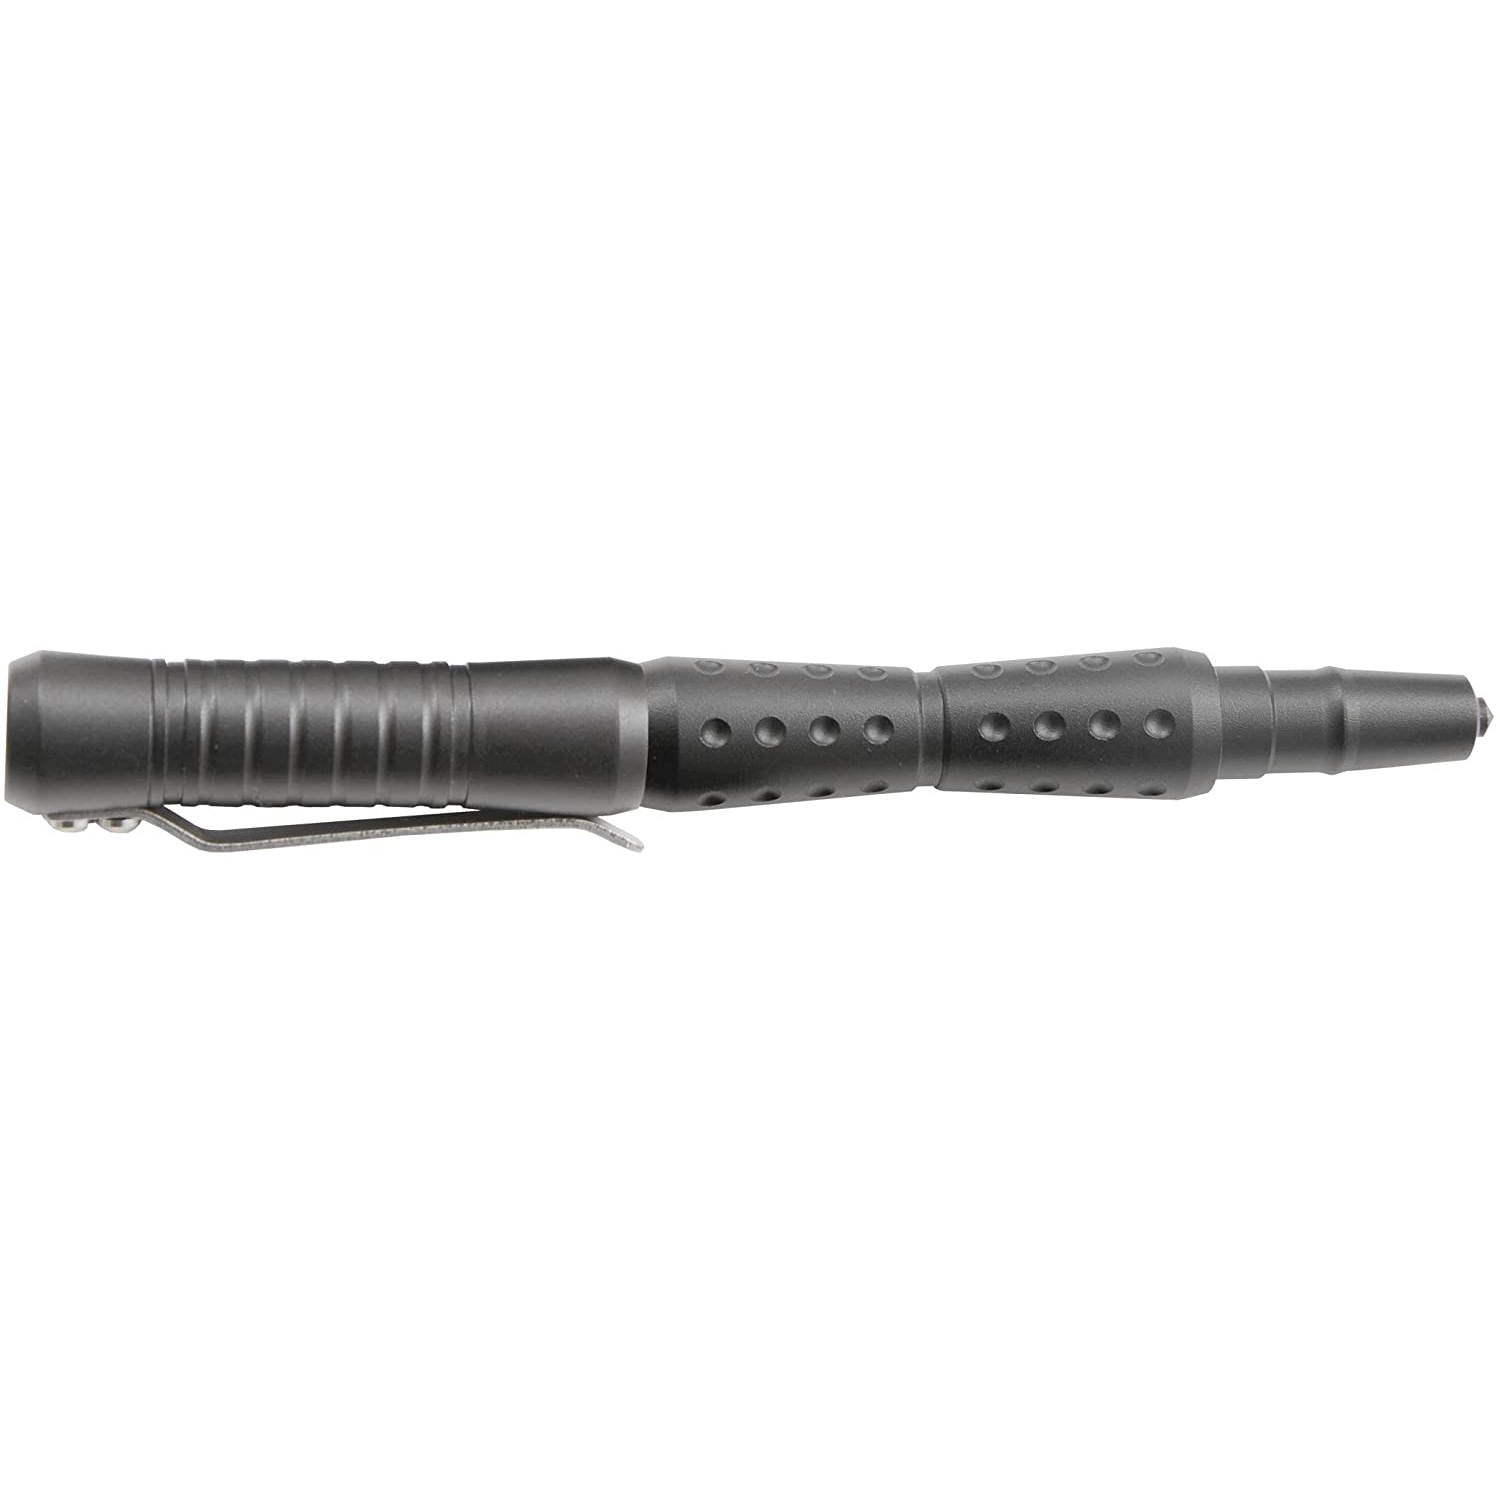 Caliber Gourmet - UZI Tactical Pen 19 - Gun Metal